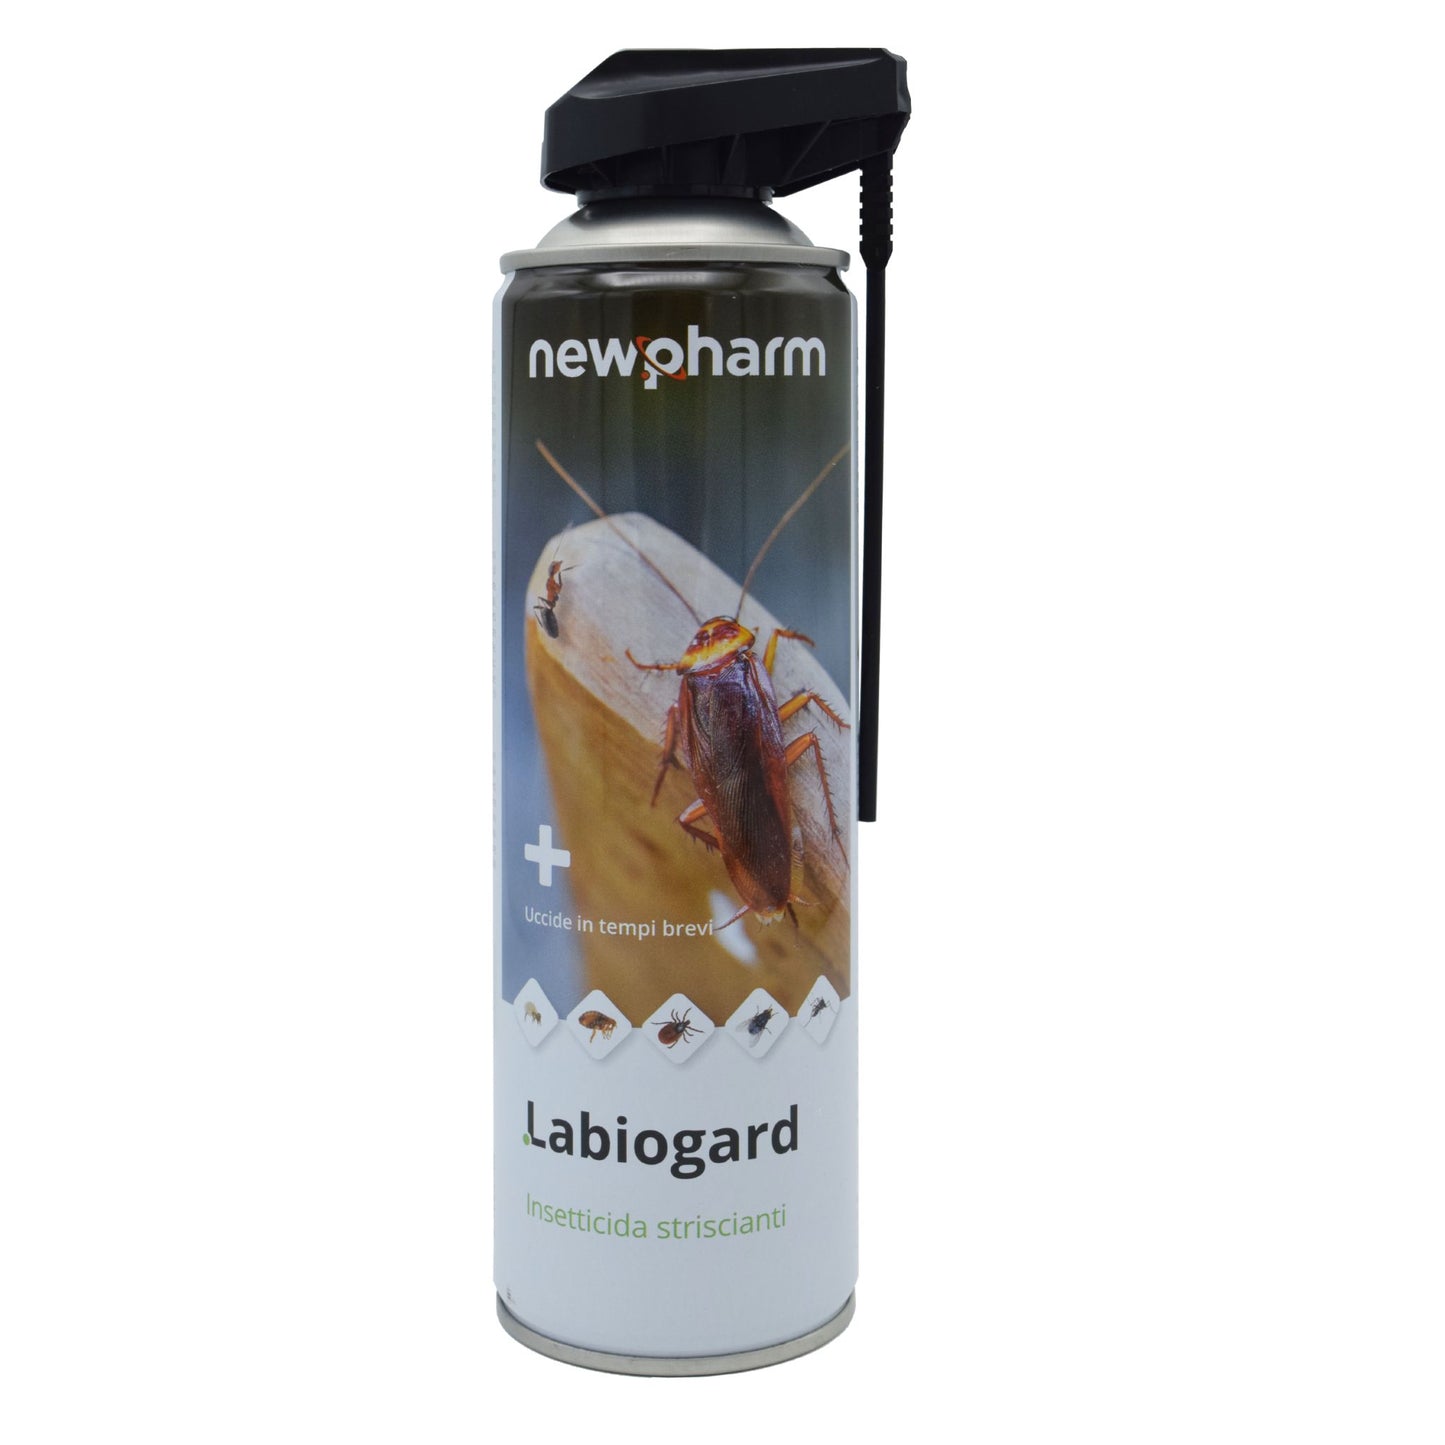 Newpharm Labiogard